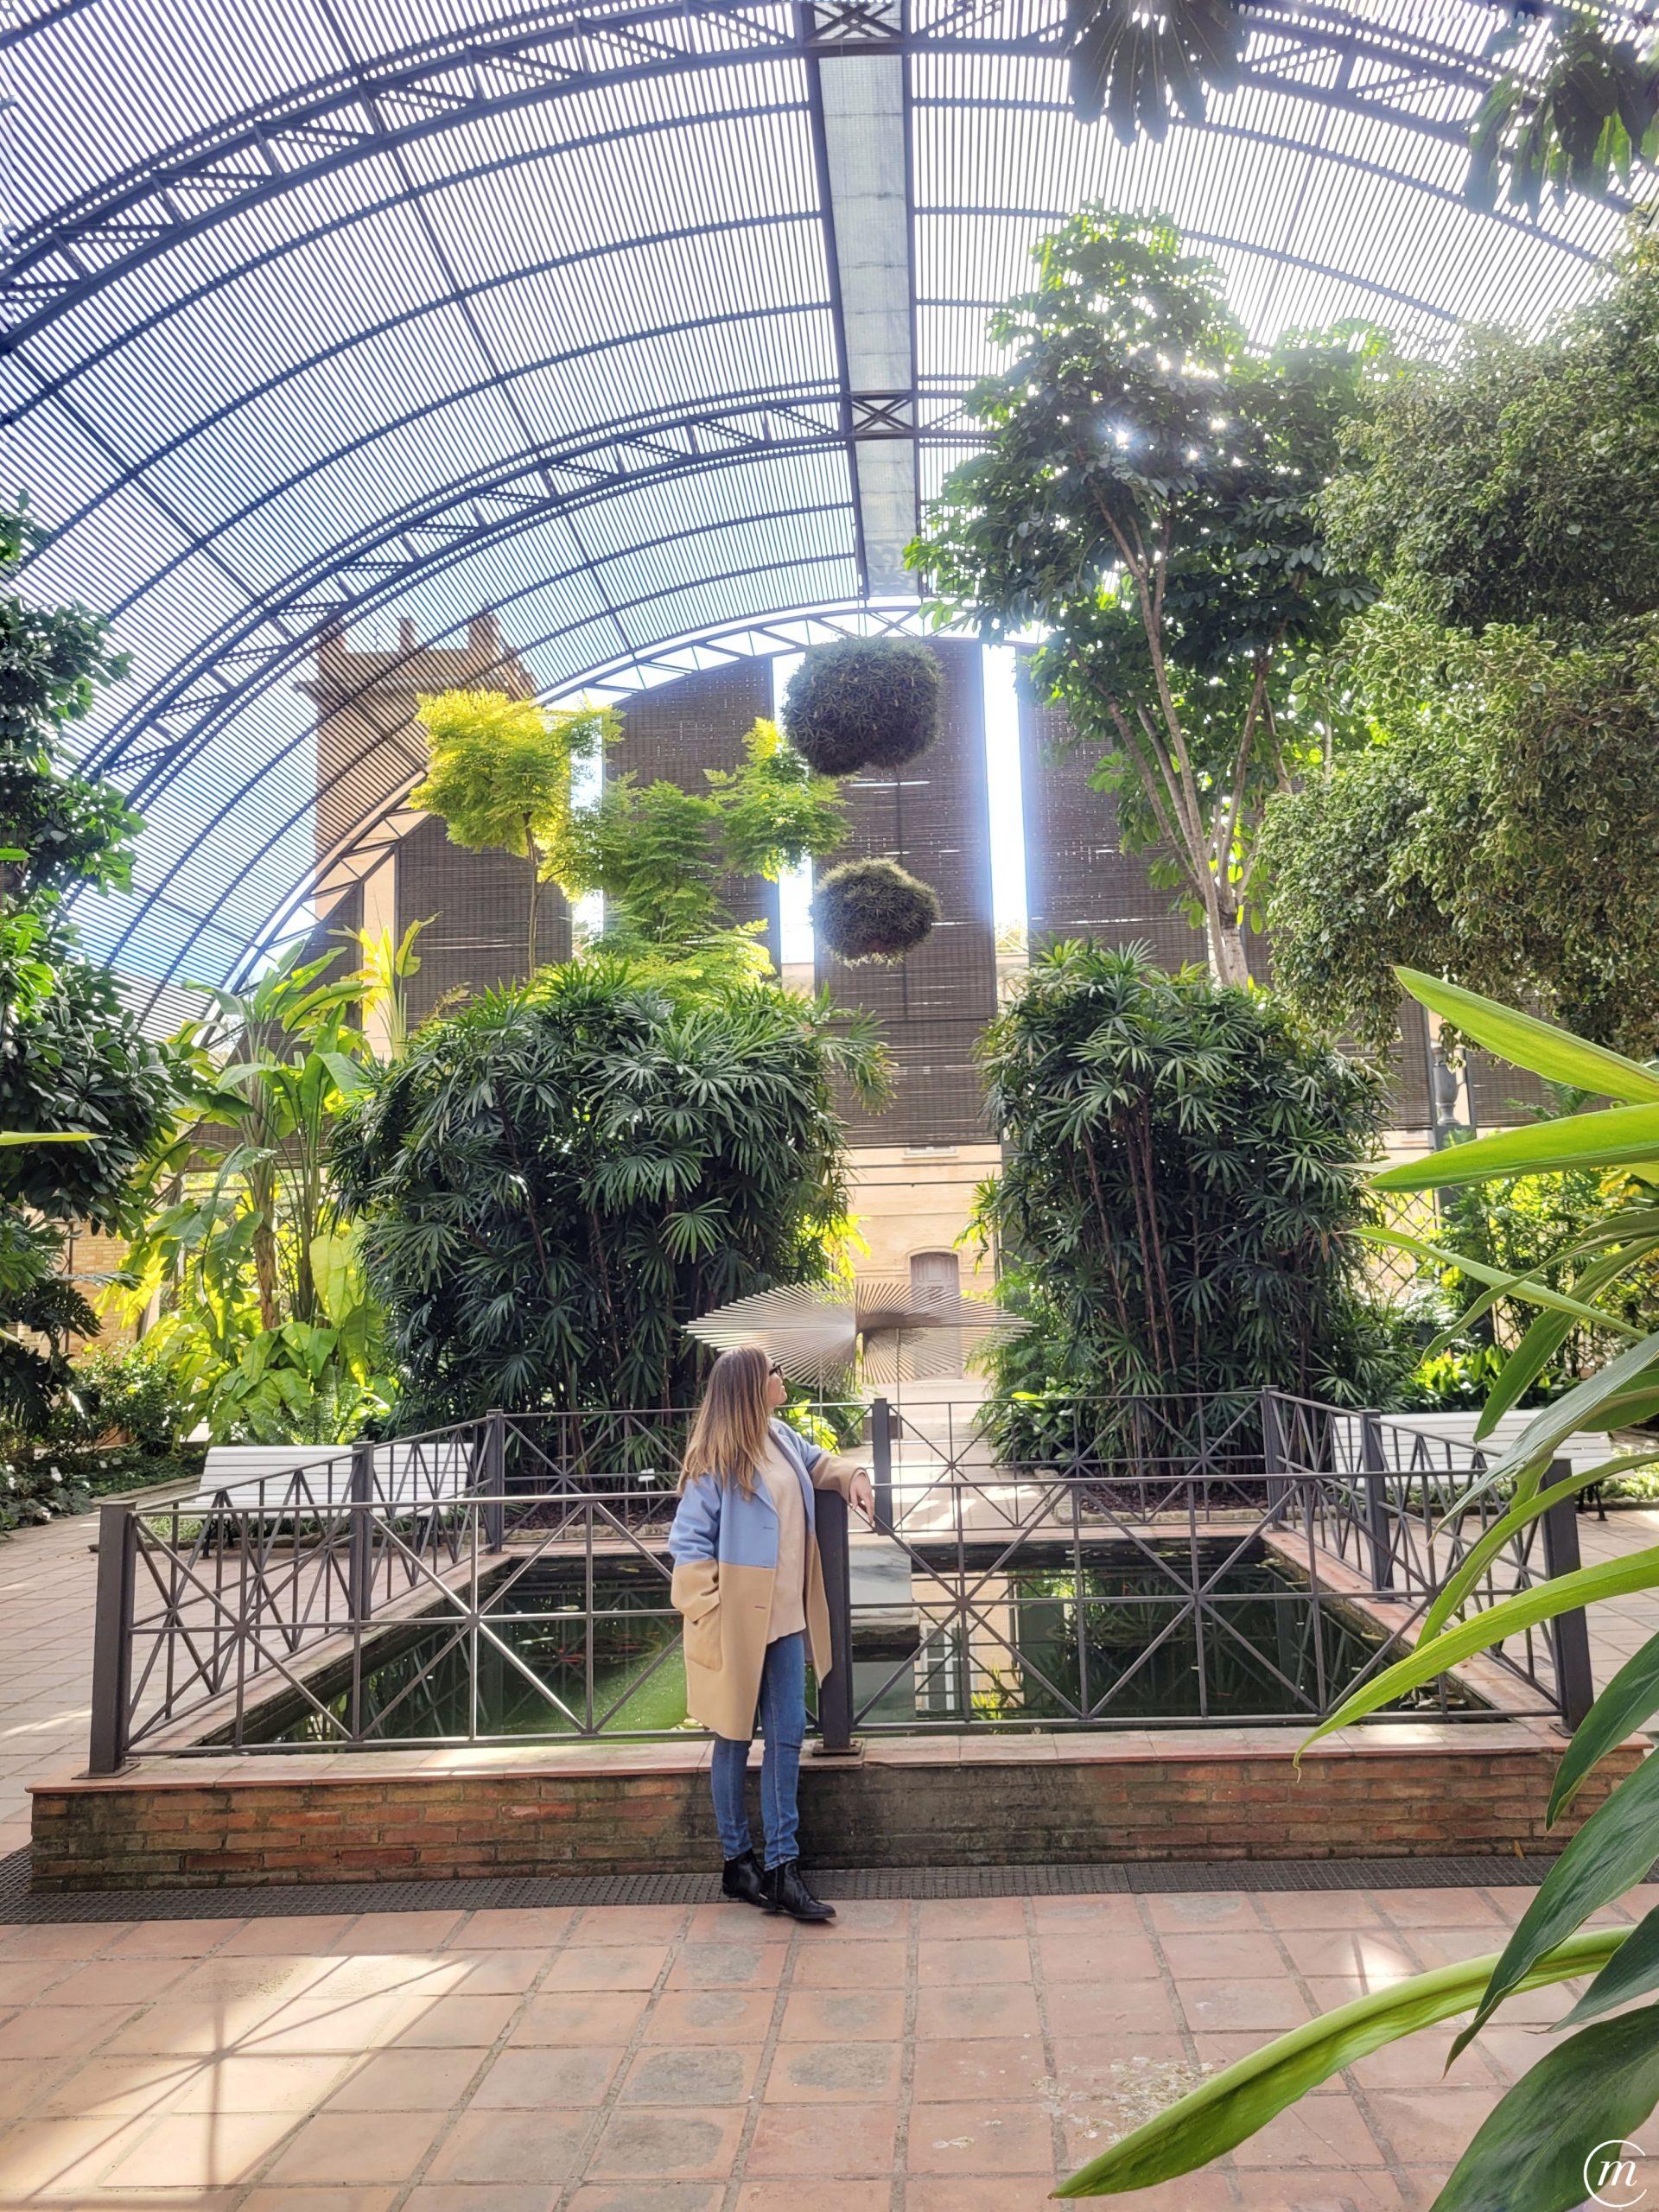 Jardín Botánico de Valencia